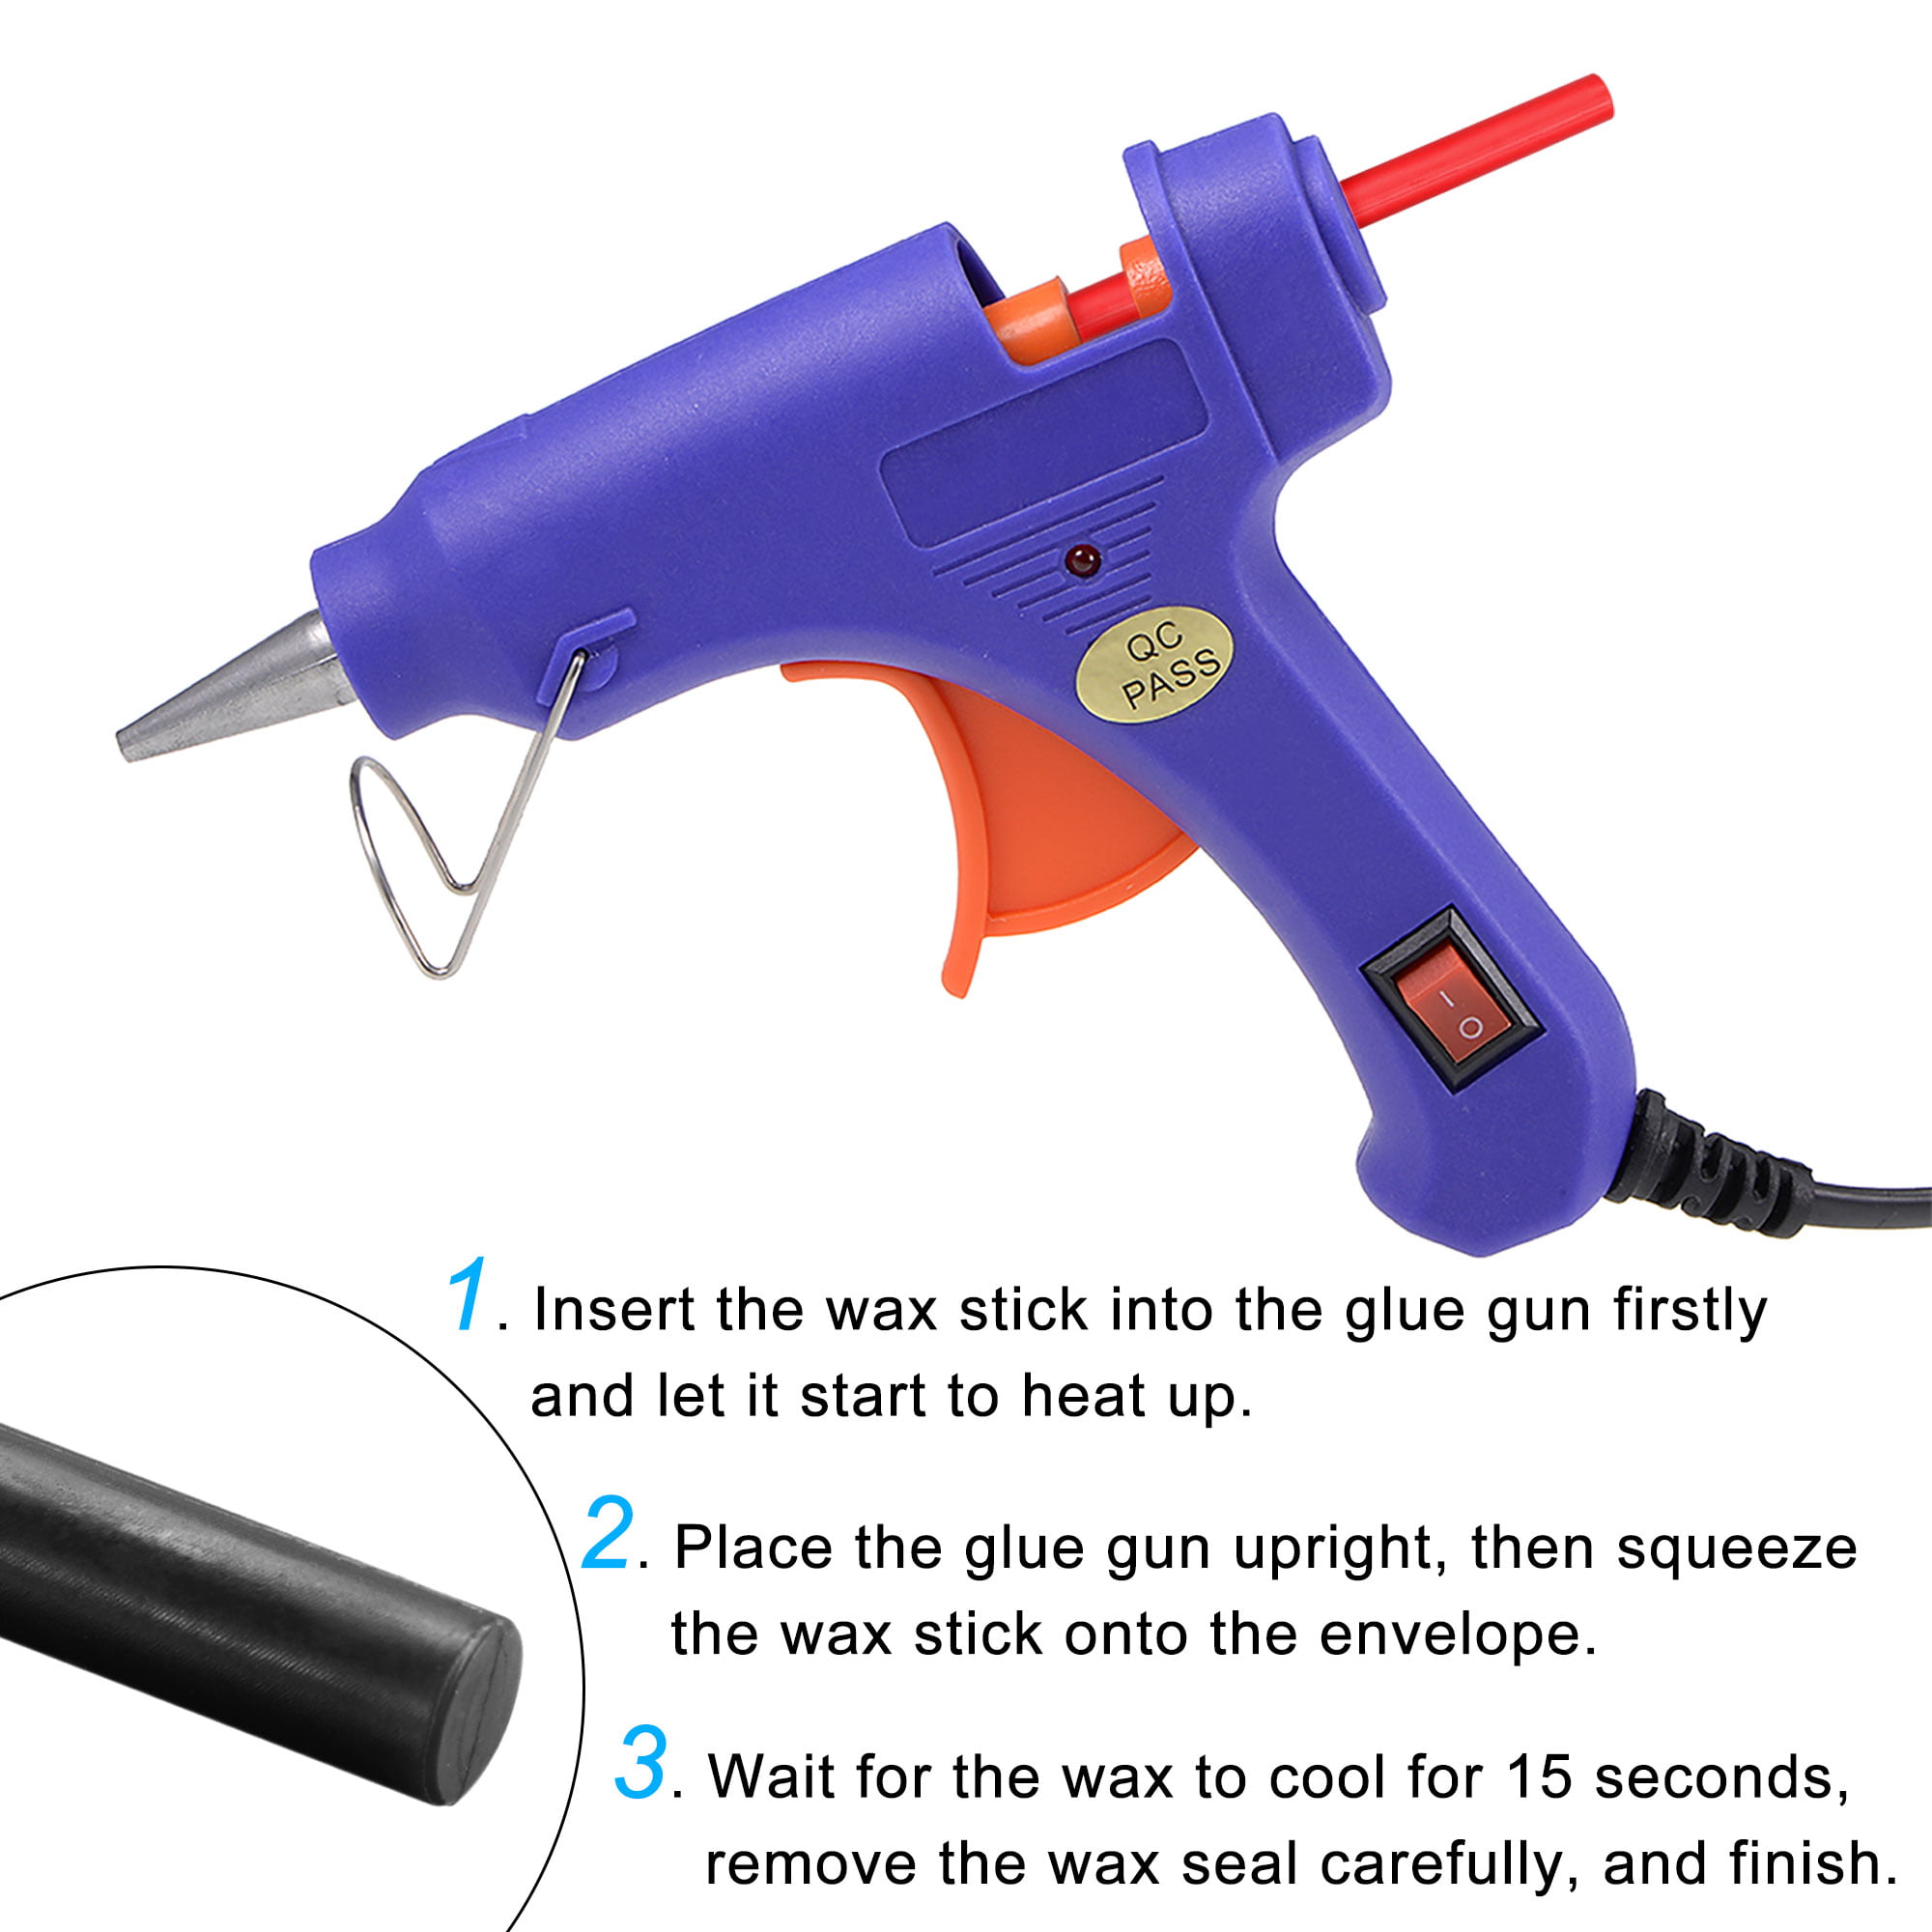 20 PCS Sealing Wax Stick 10mm For Sealing Gun Melting Stamp